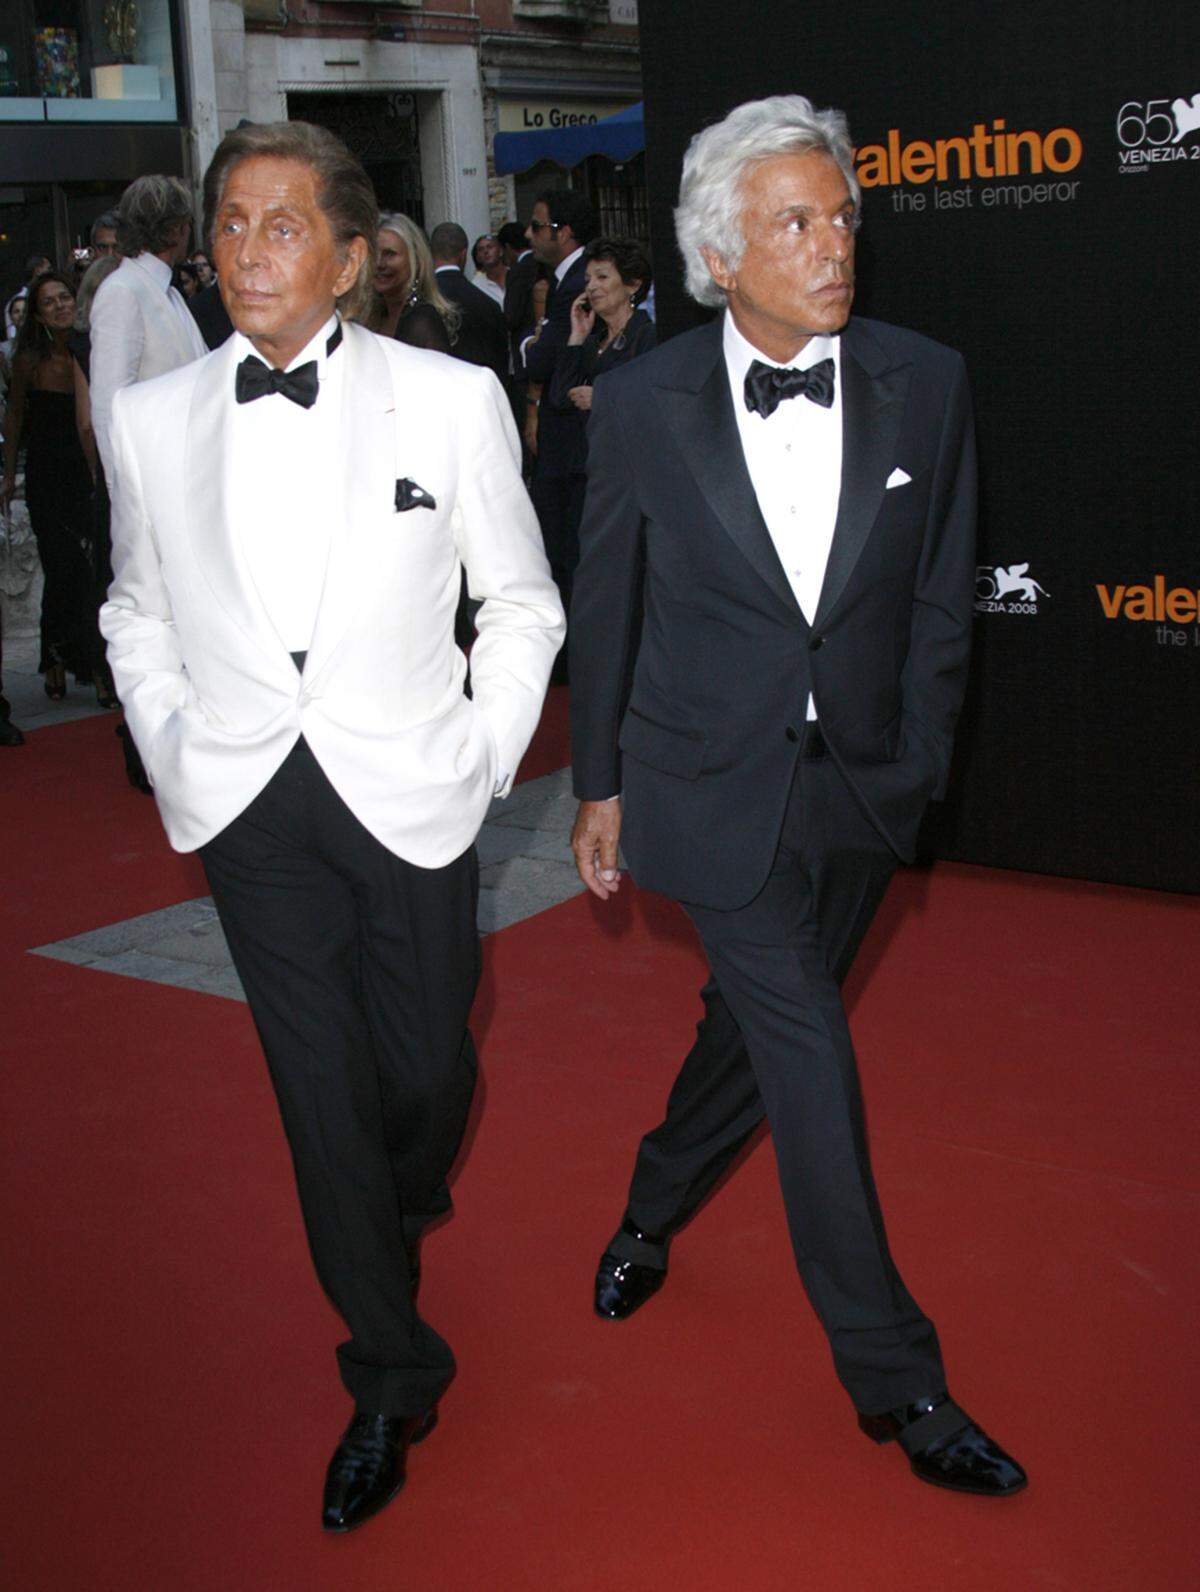 Valentino Garavani und Giancarlo Giammetti  waren privat und beruflich fast 50 Jahre ein Paar und haben in dieser Zeit das Modelabel Valentino zu Ruhm verholfen.